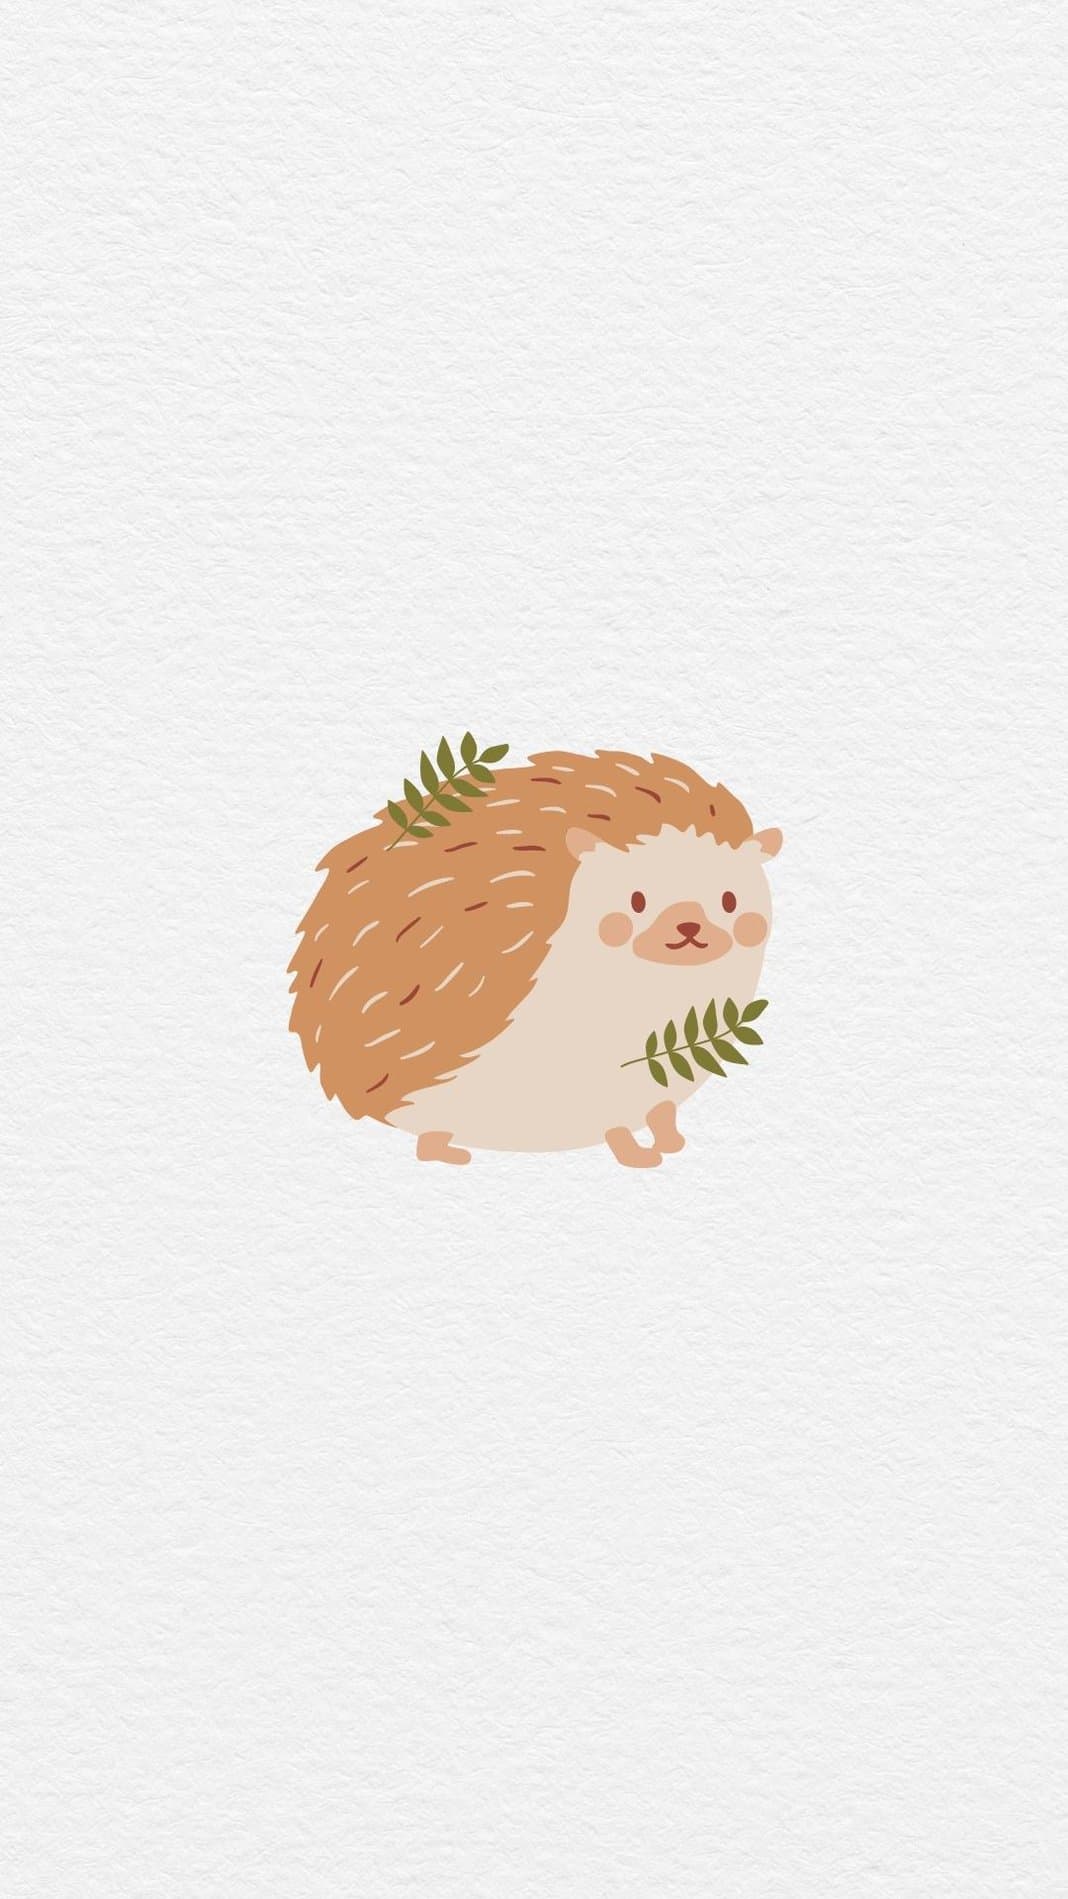 Cute Hedgehog iPhone Wallpaper